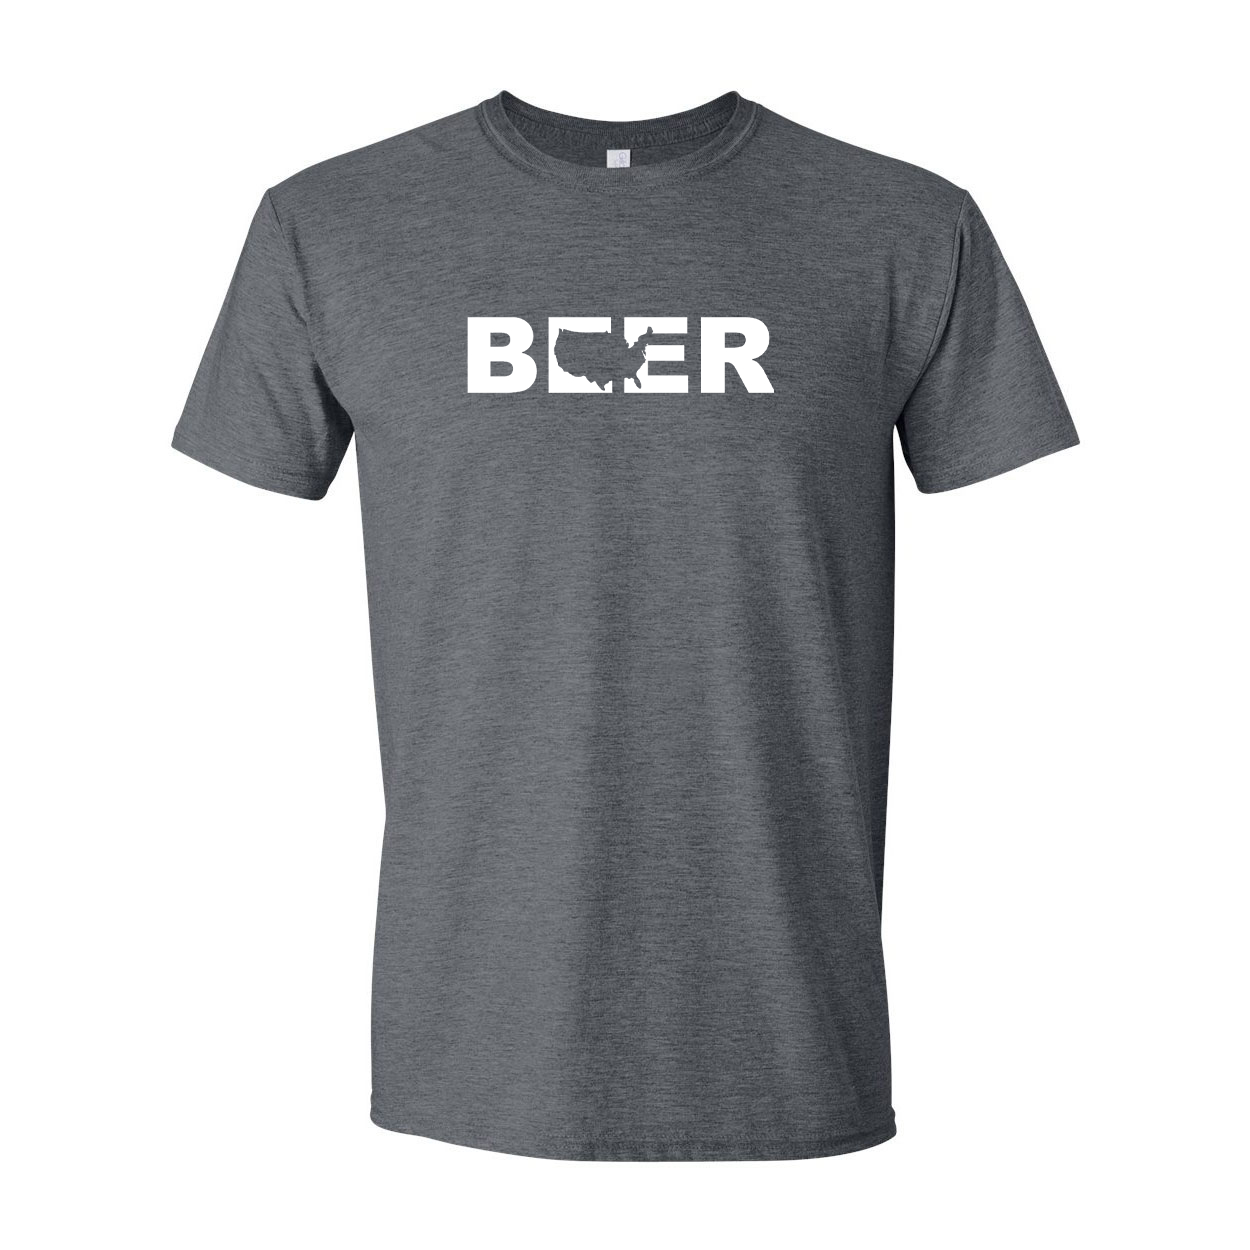 Beer United States Classic T-Shirt Dark Heather Gray (White Logo)